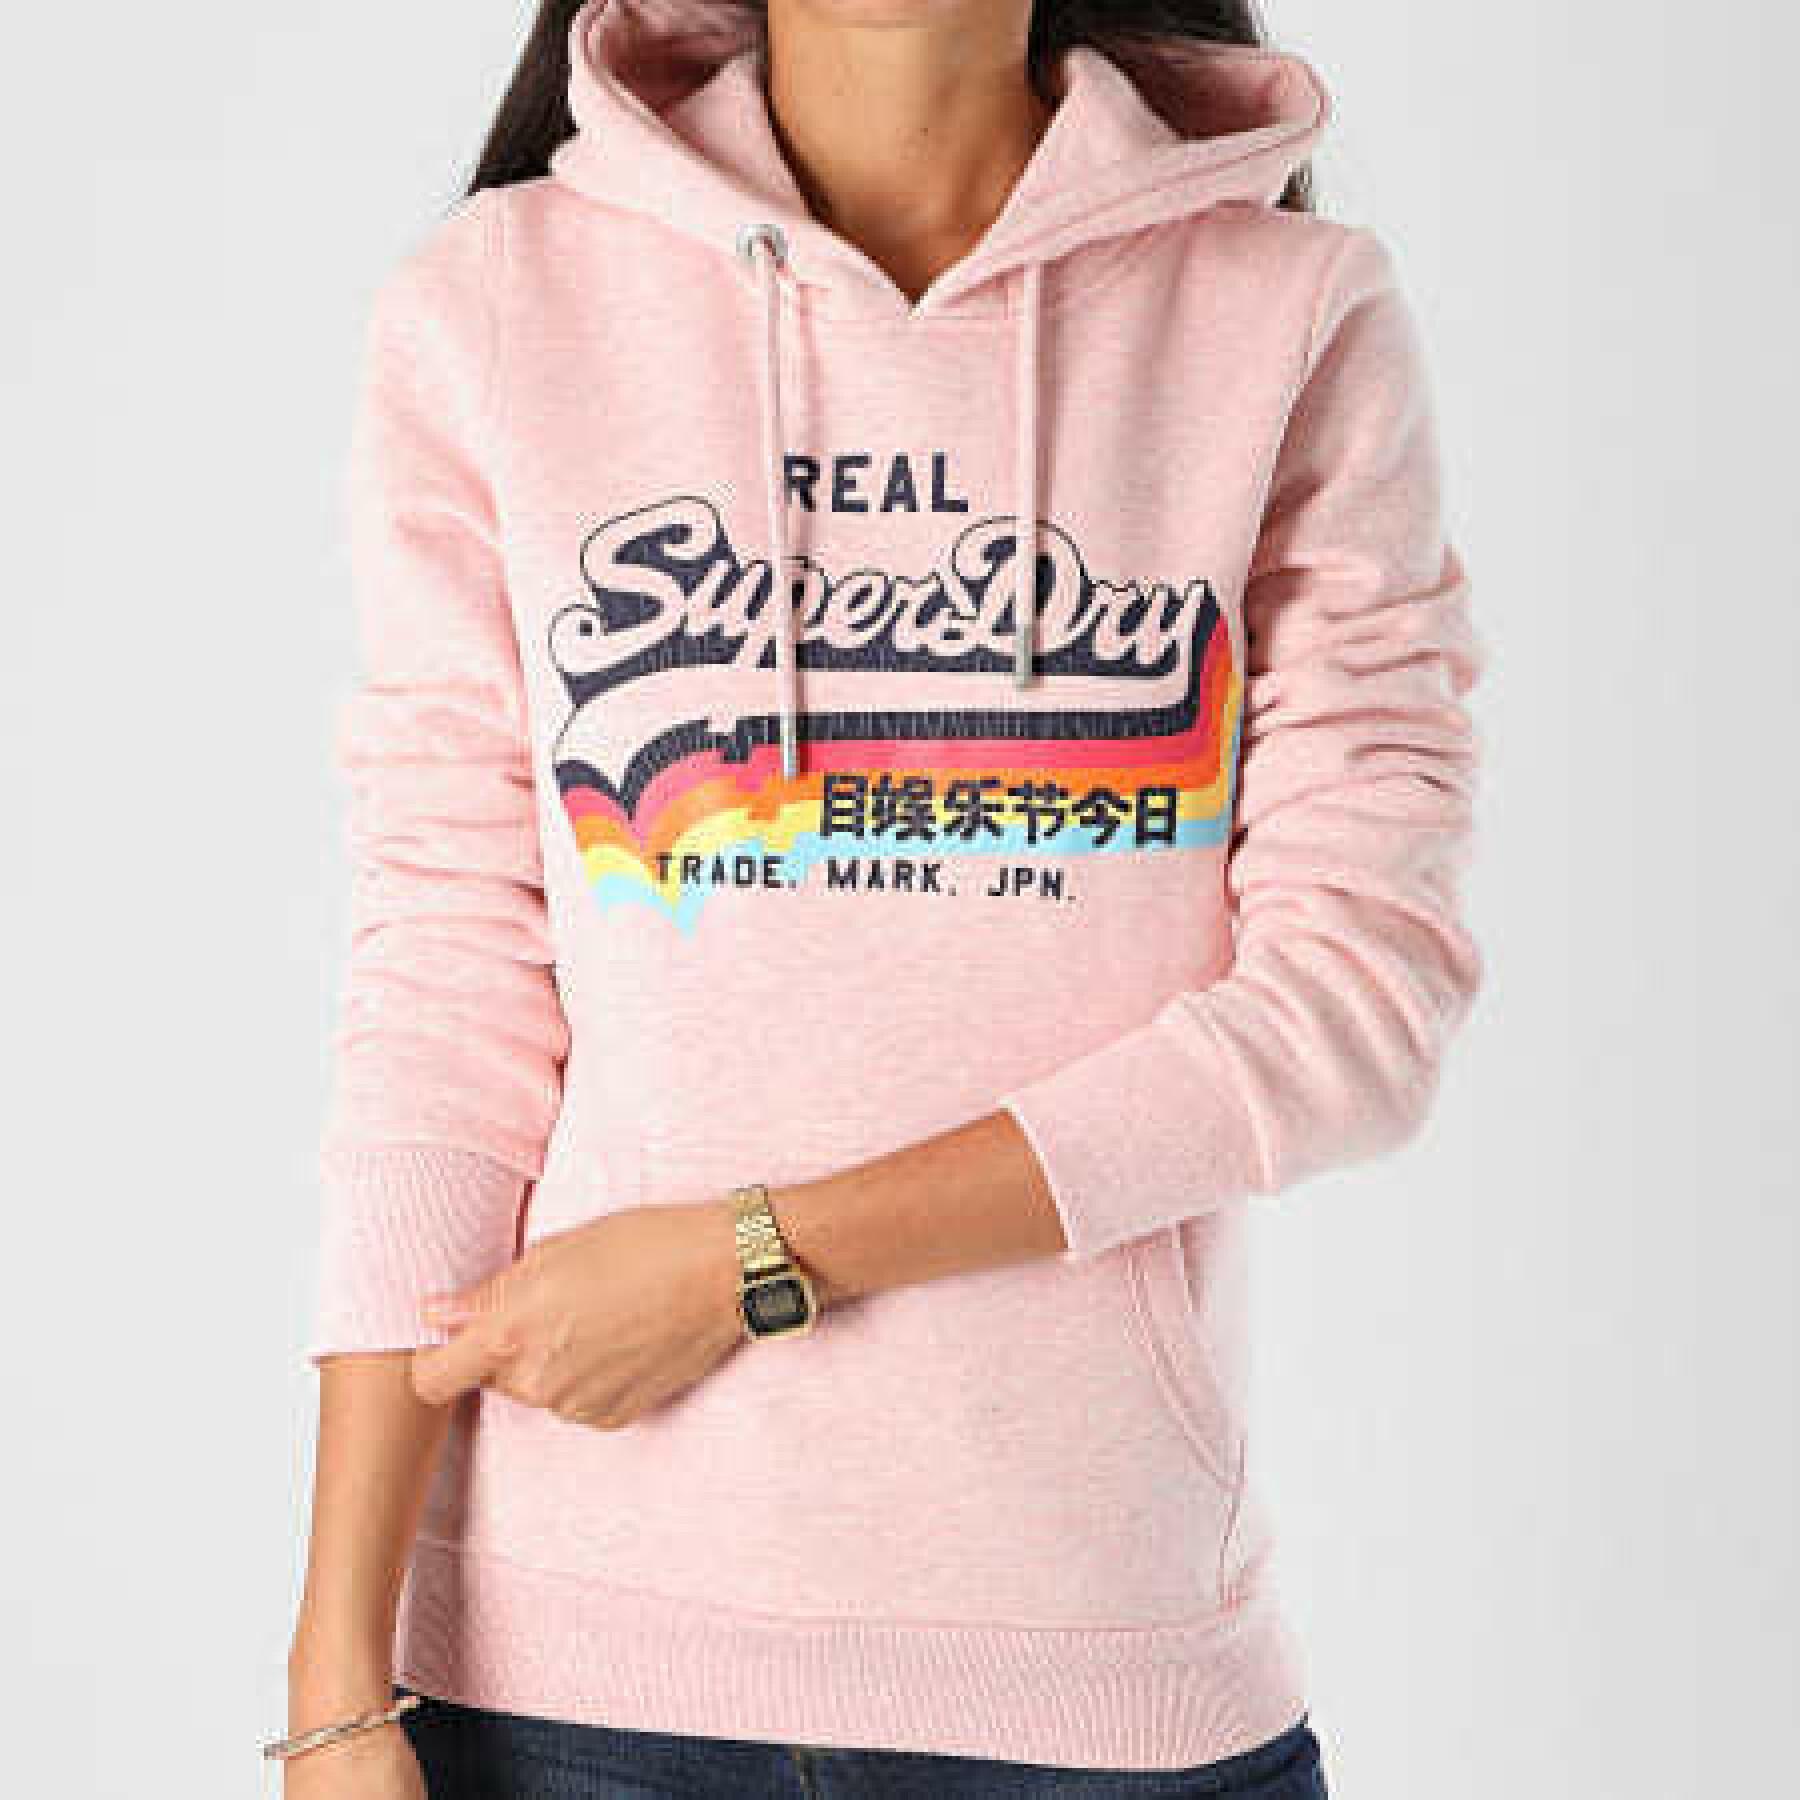 Women's hoodie Superdry Vintage Logo